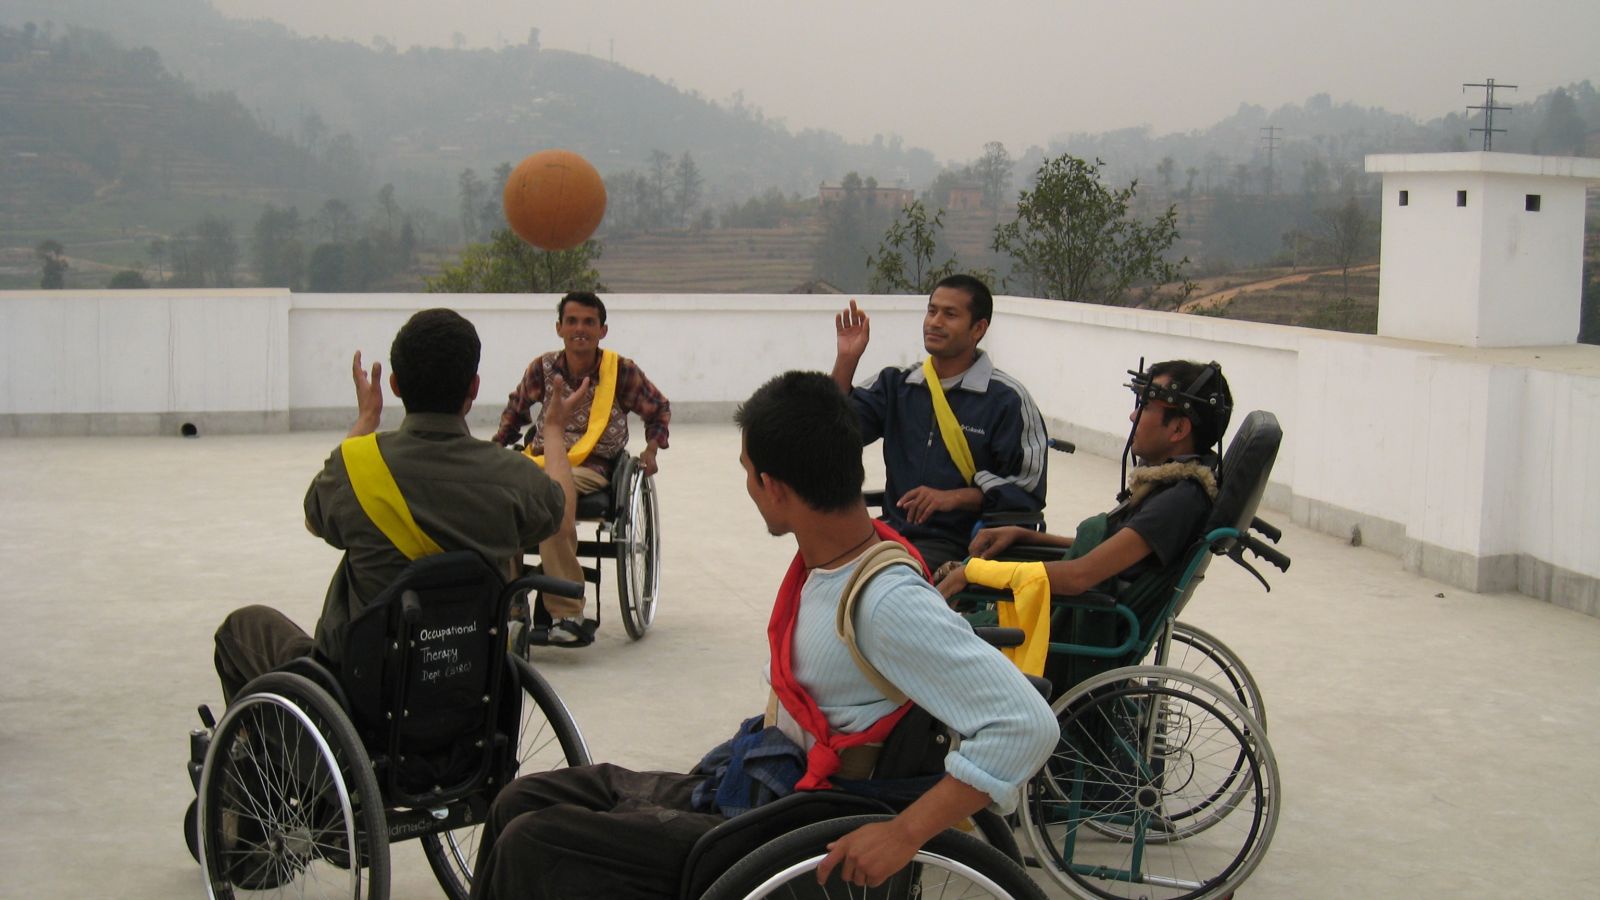 Plus de 10.000 personnes paraplégiques sont invitées à participer à l’enquête à l’échelle mondiale